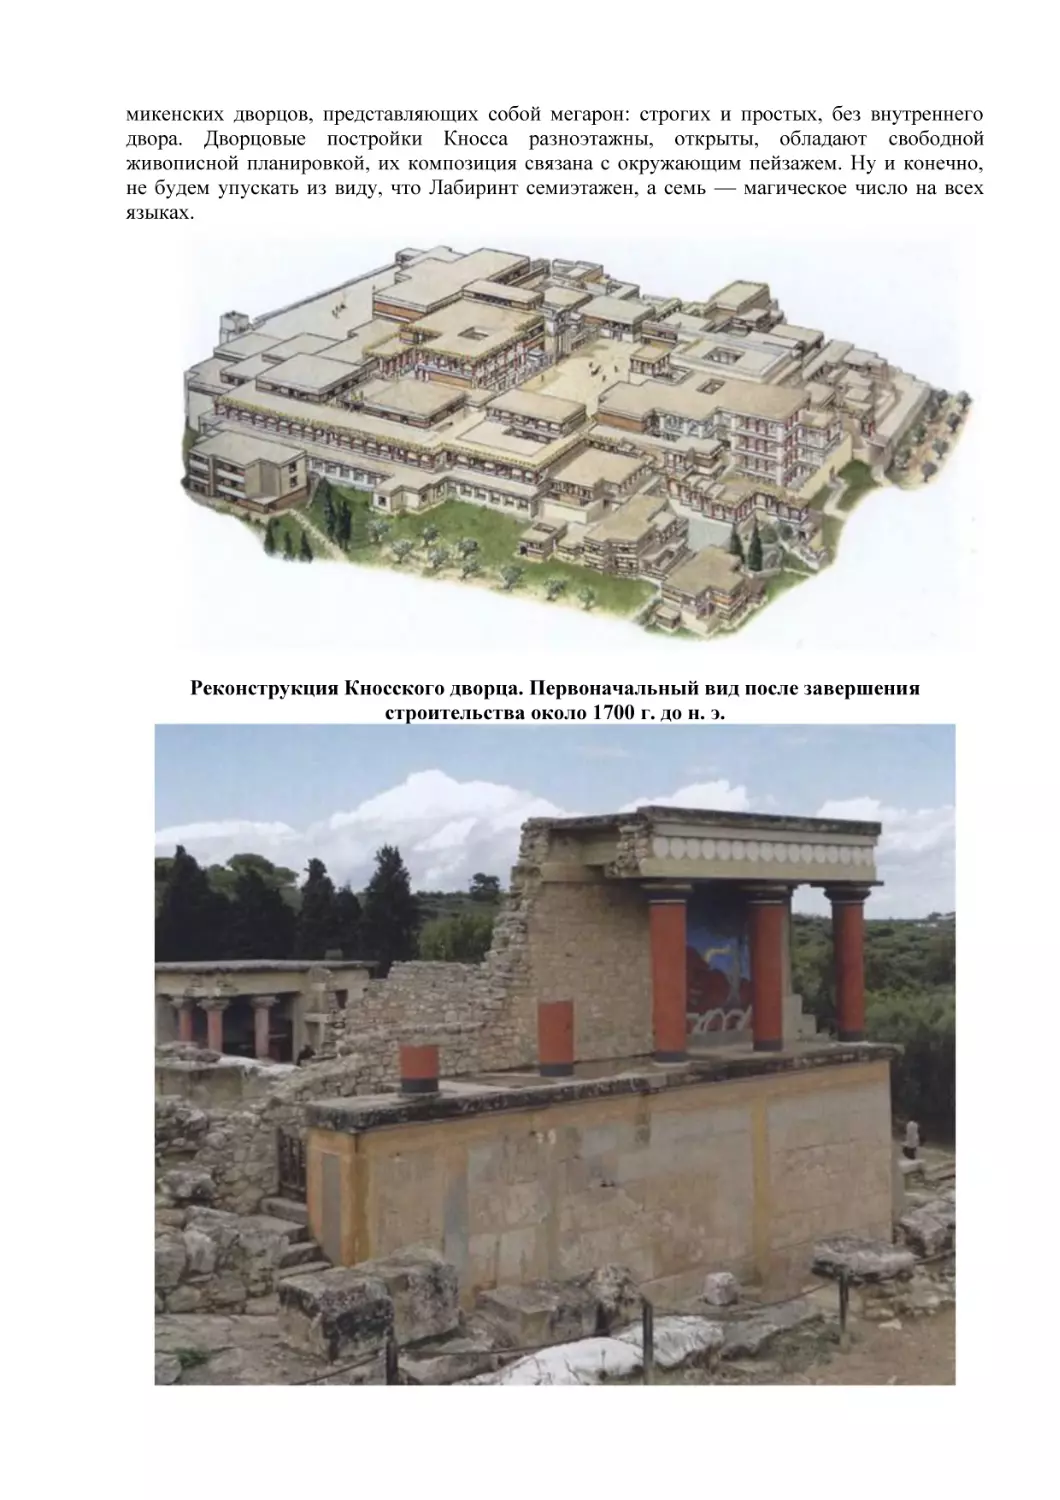 Реконструкция Кносского дворца. Первоначальный вид после завершения строительства около 1700 г. до н. э.